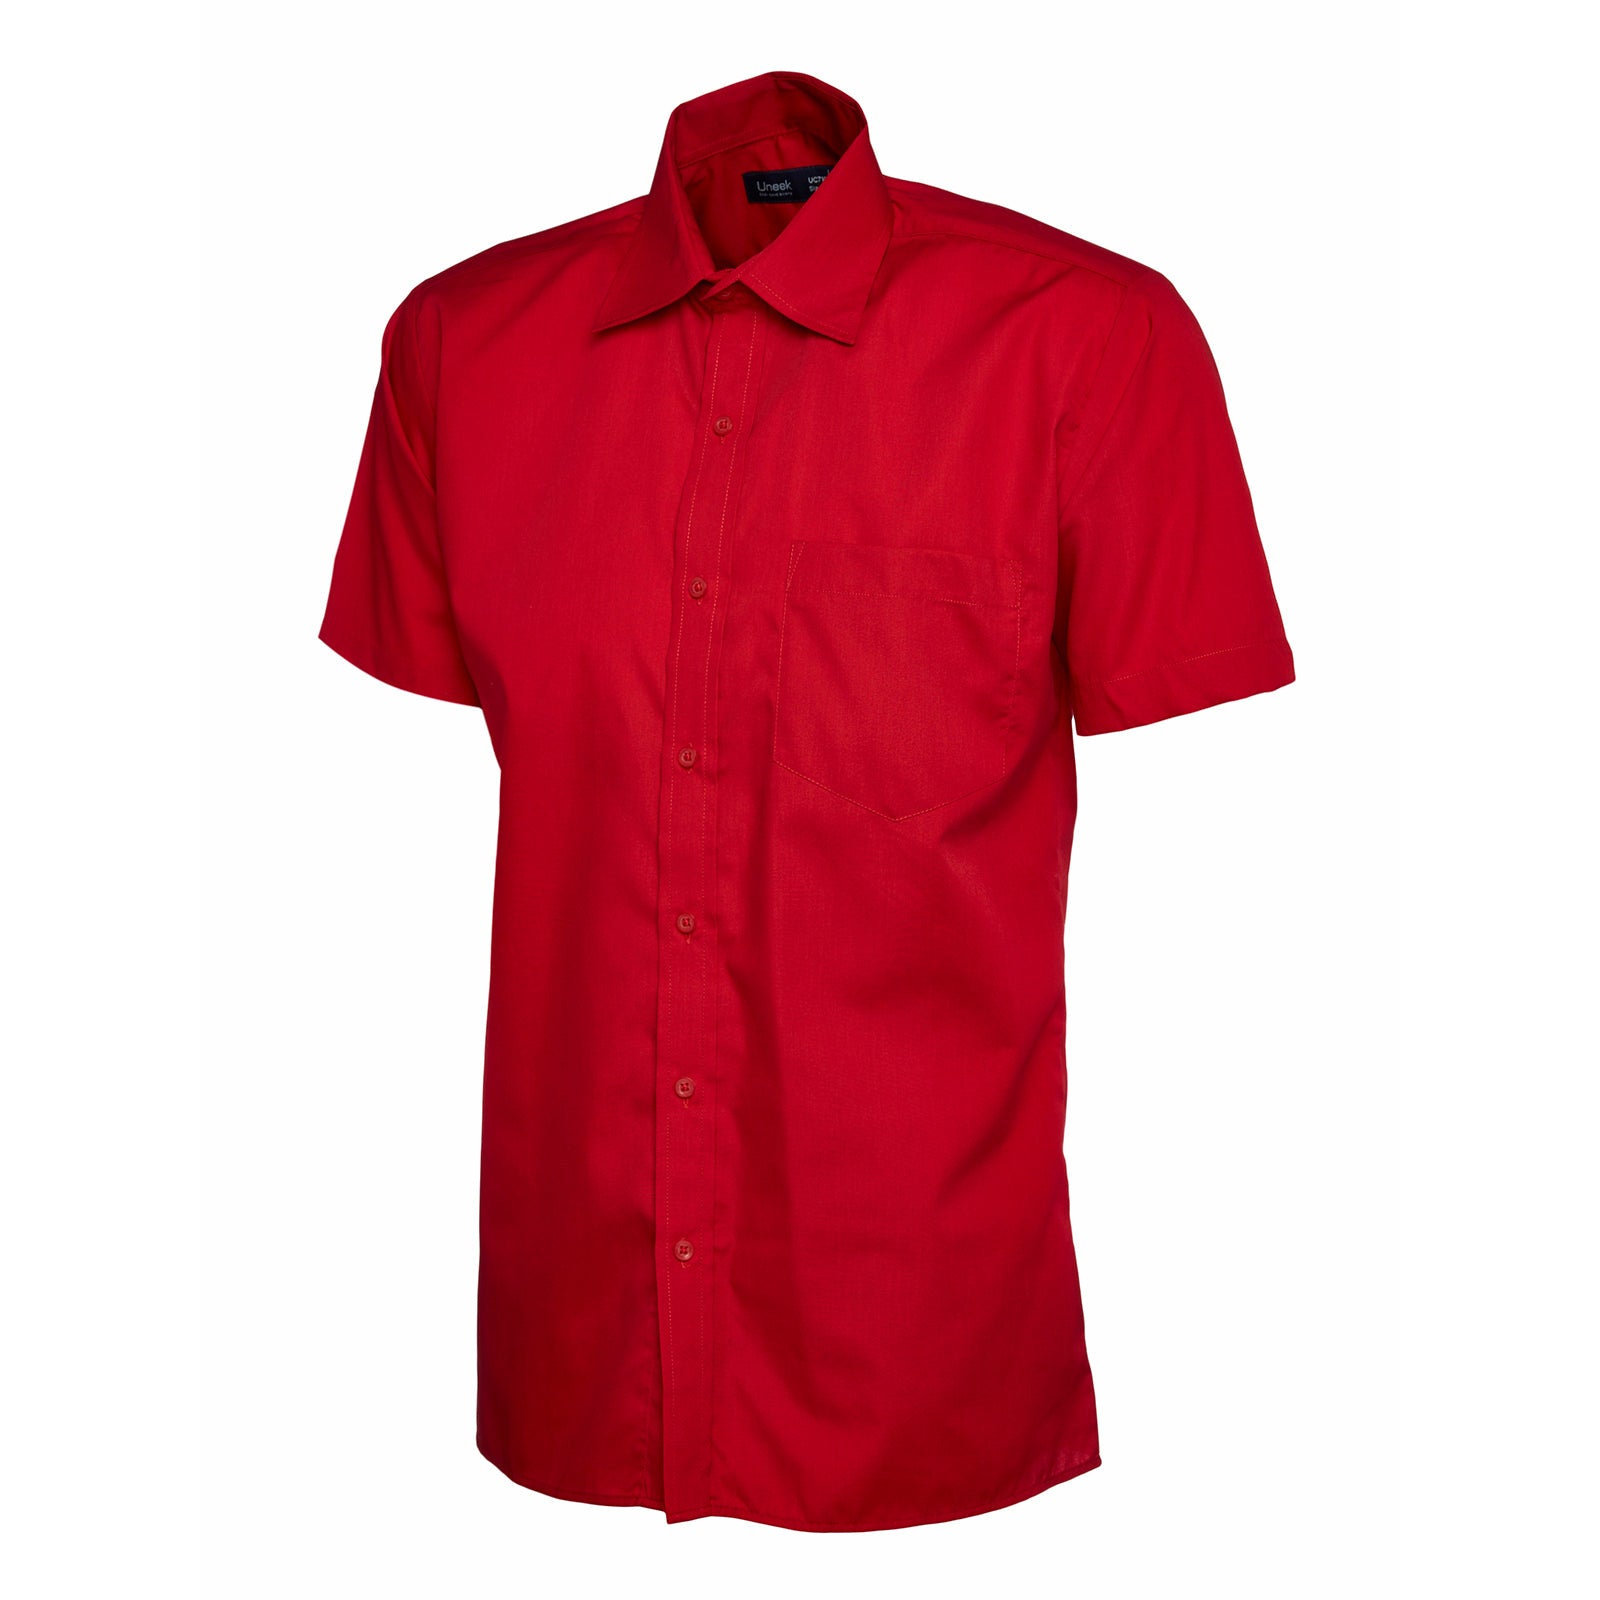 Mens Poplin Half Sleeve Shirt (14.5 - 16.5) - Red